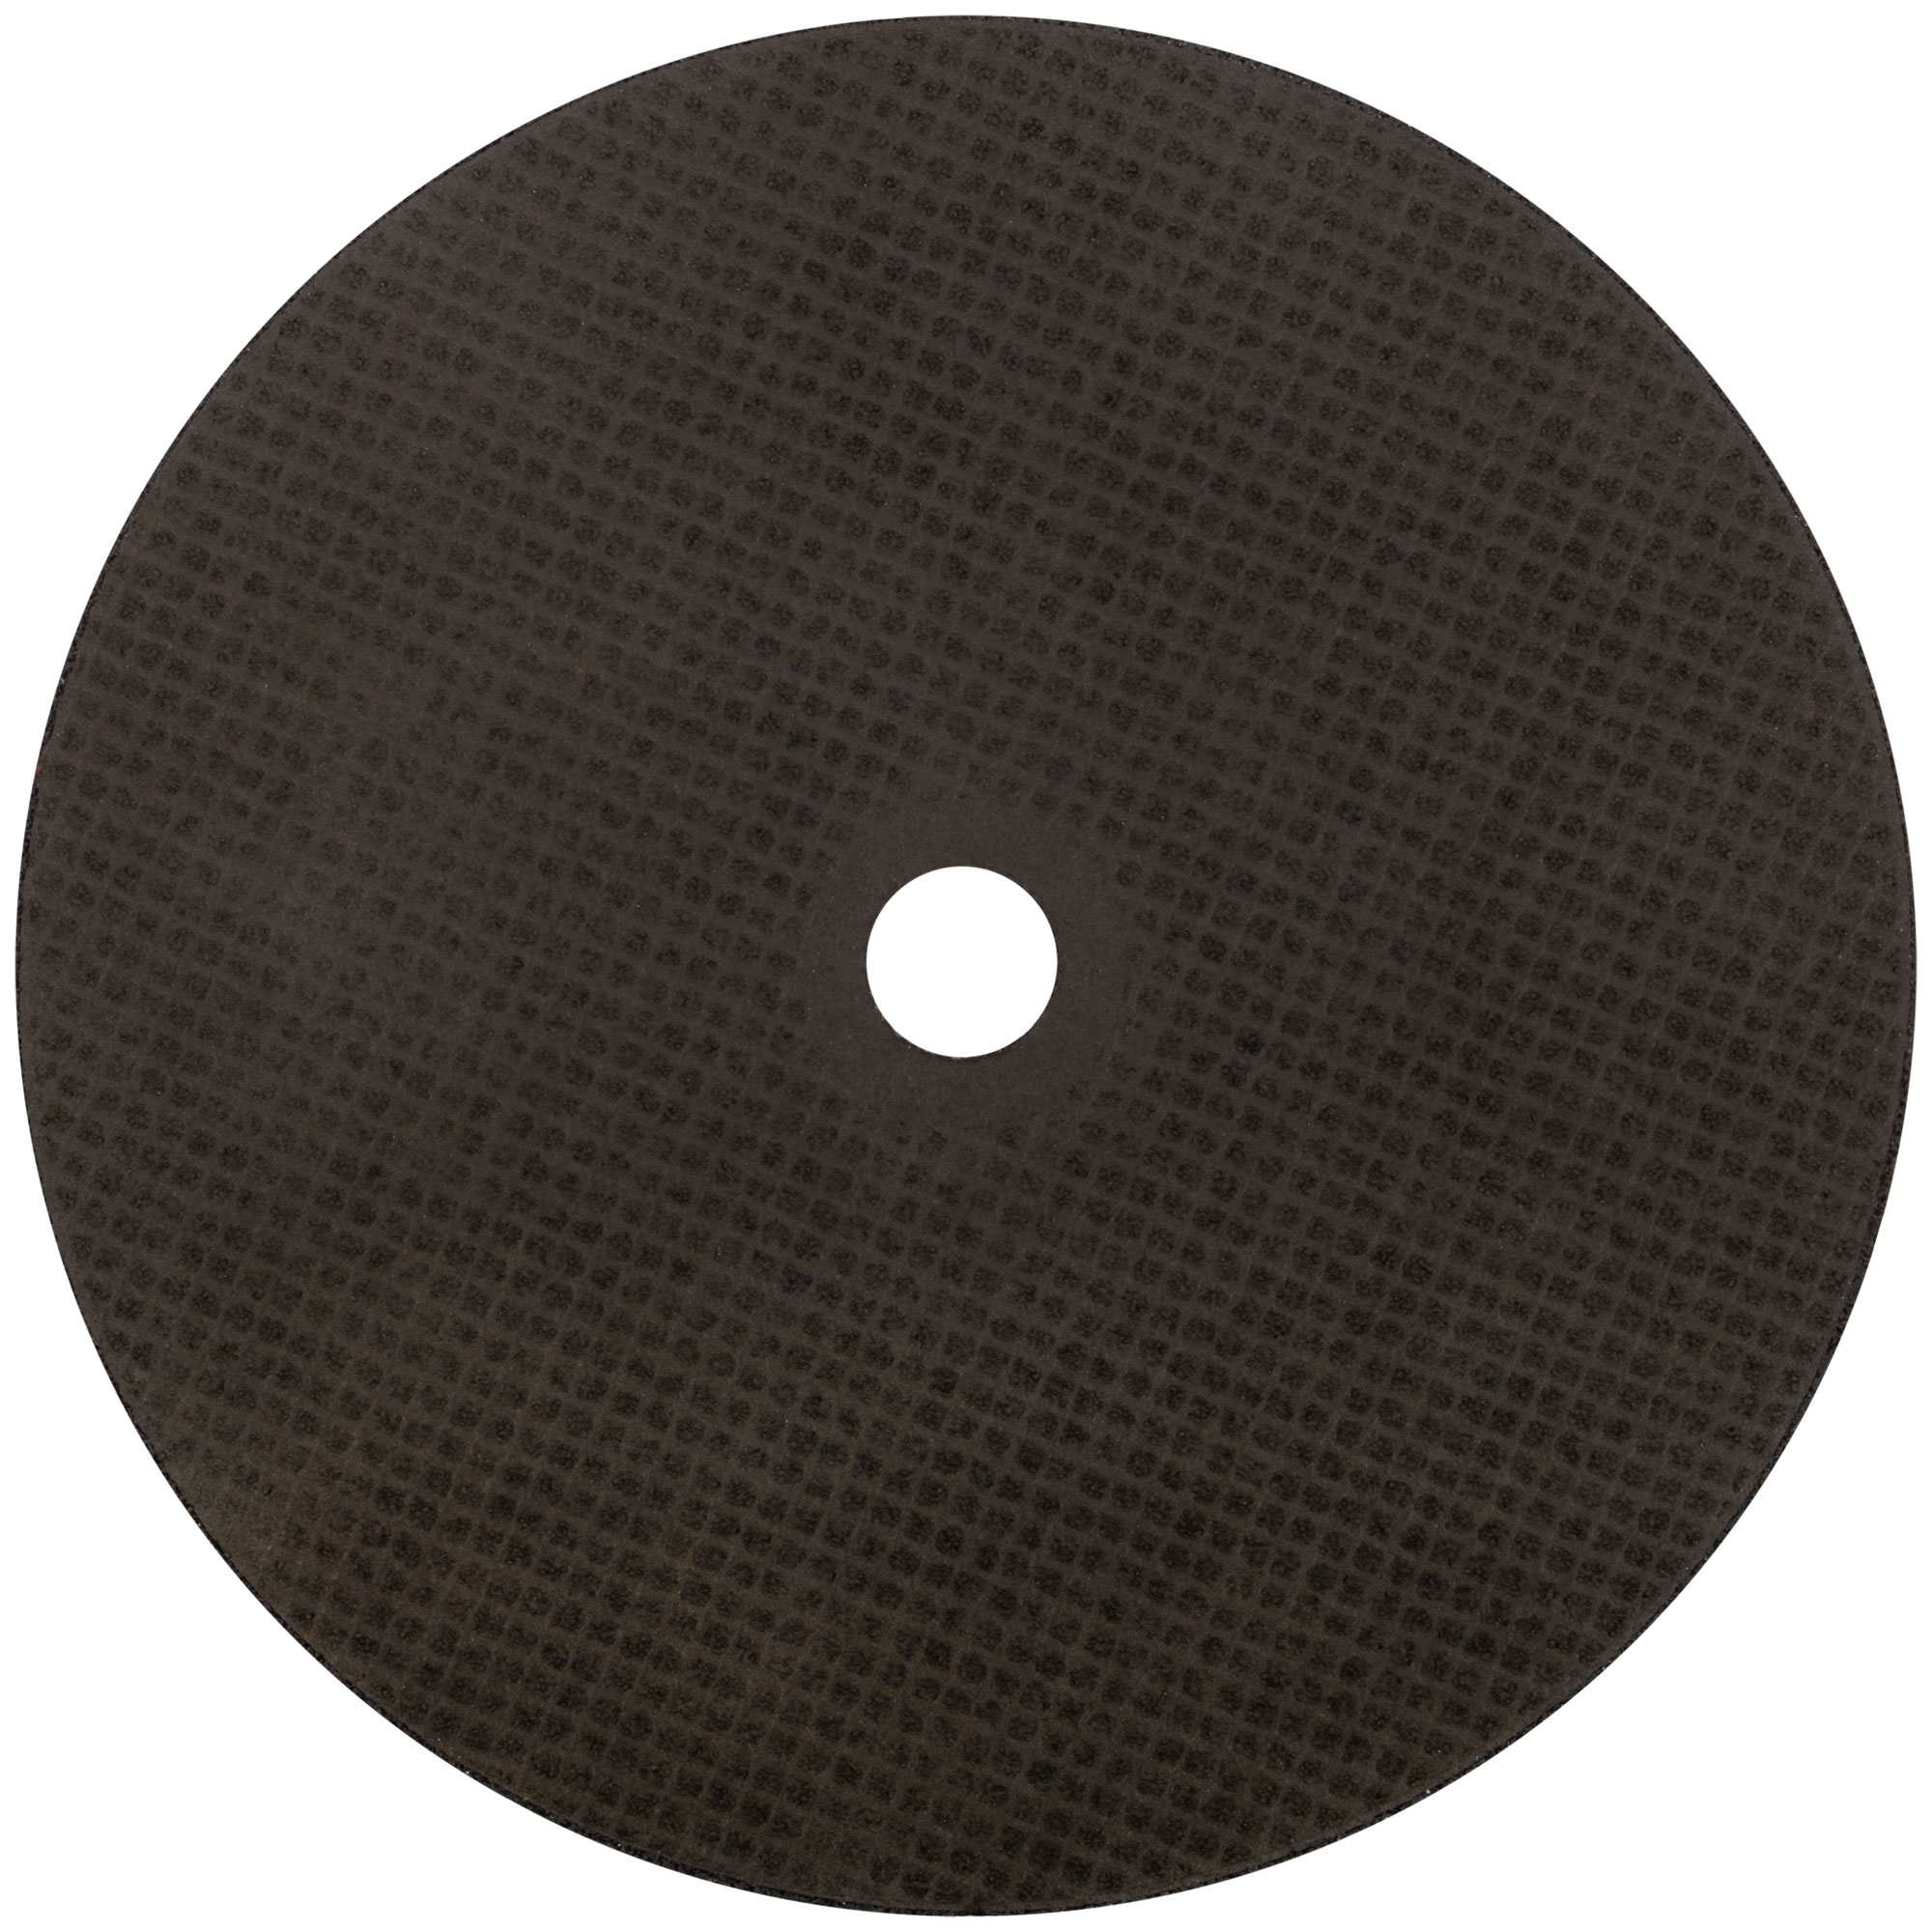 Профессиональный диск отрезной по металлу Т41-230 х 2,5 х 22,2 мм, Cutop Profi